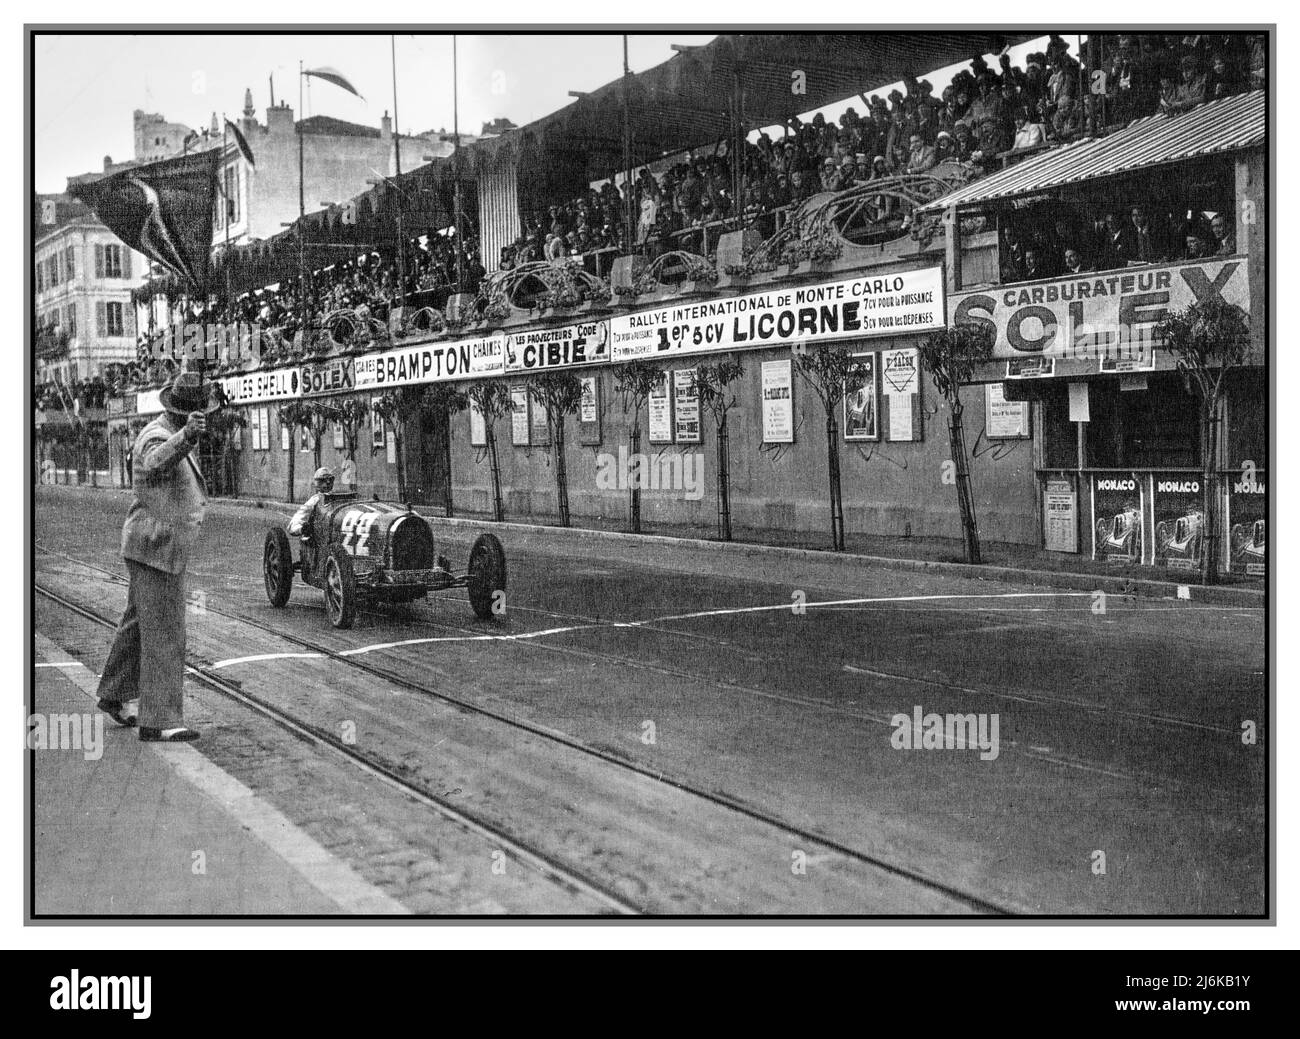 GRAND PRIX VON MONACO Jahrgang 1930 René Dreyfus gewinnt beim Grand Prix von Monaco 1930 mit dem Renner von 35B. Der große Preis von Monaco 1930 war ein Grand-Prix-Motorrennen, das am 6. April 1930 auf dem Circuit de Monaco stattfand. Der Franzose René Dreyfus gewann das Rennen in einem Privatfahrer mit der Nummer 22. Stockfoto